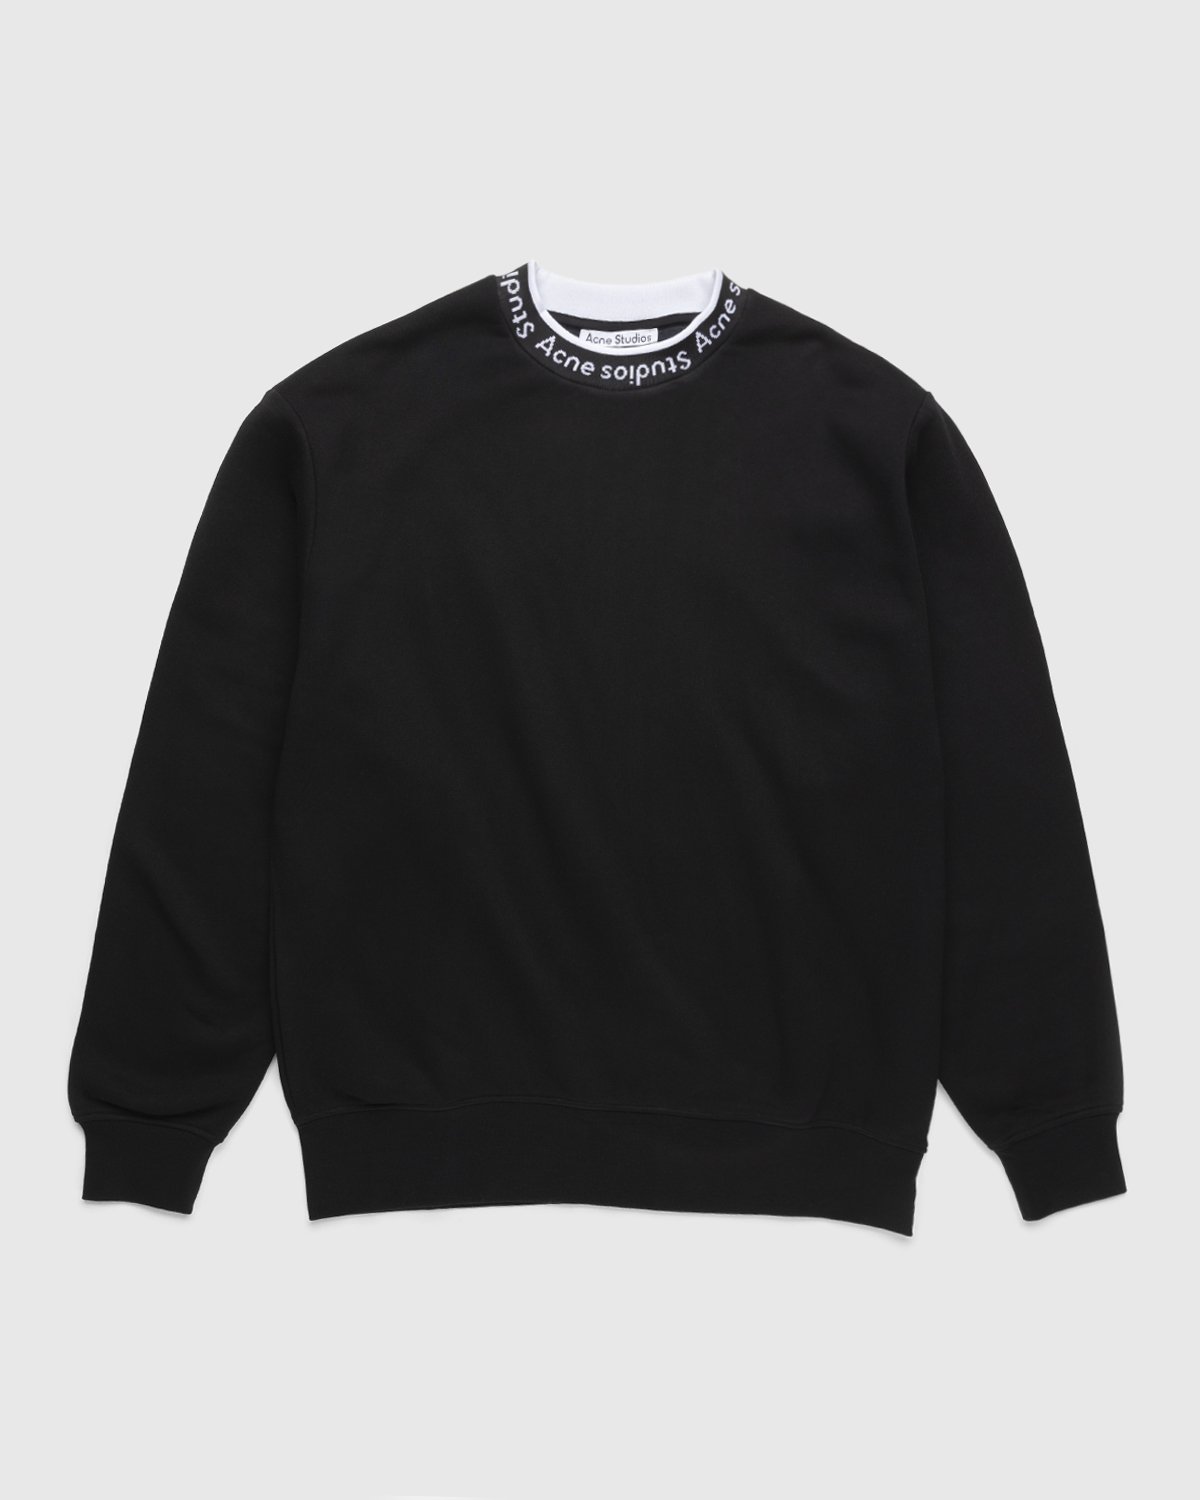 Acne Studios - Logo Rib Sweatshirt Black - Clothing - Black - Image 1